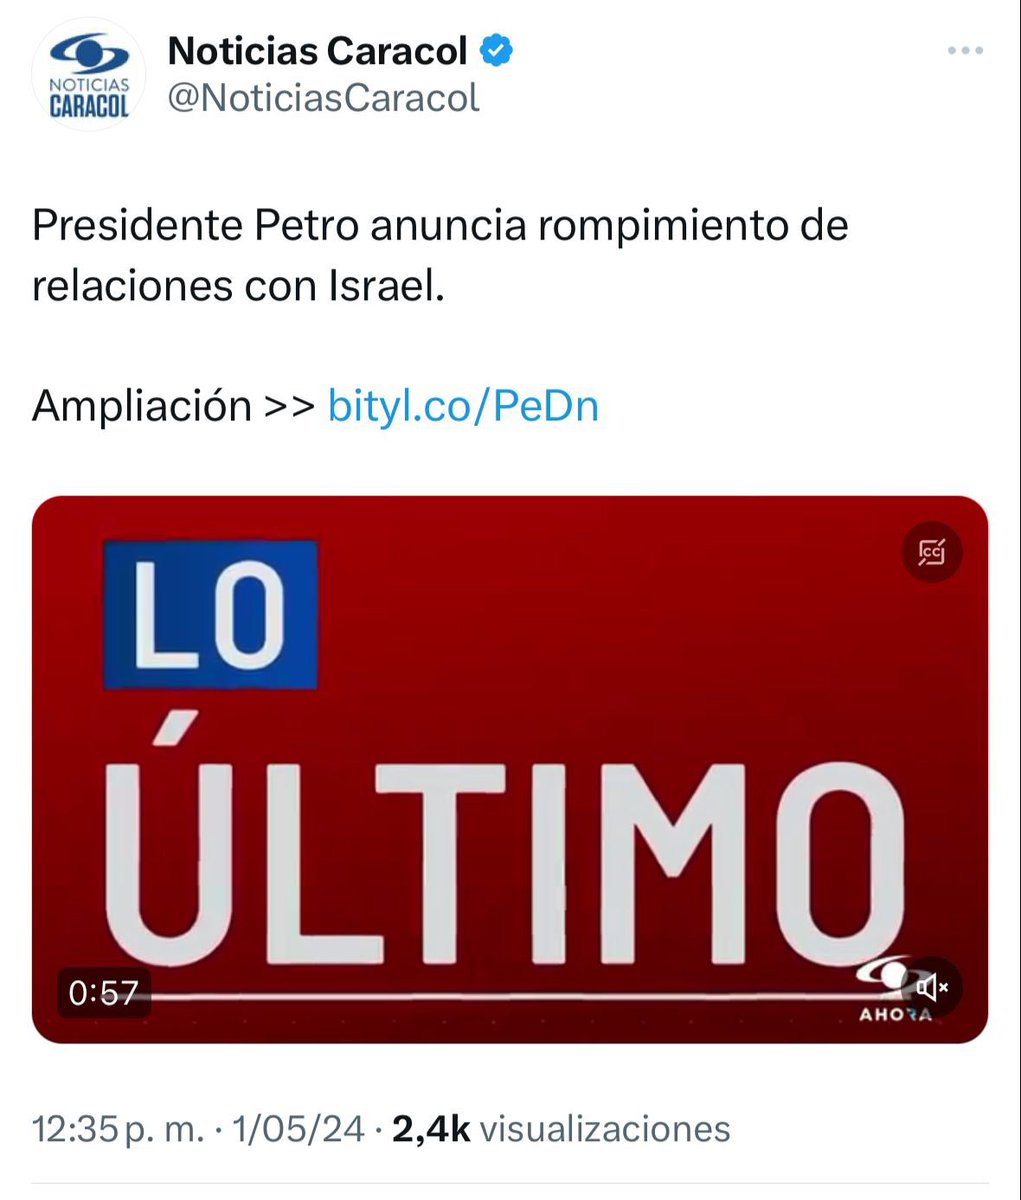 Petro irresponsablemente conduce a Colombia a otra crisis diplomática que nos costará la cooperación en seguridad y defensa con Israel.